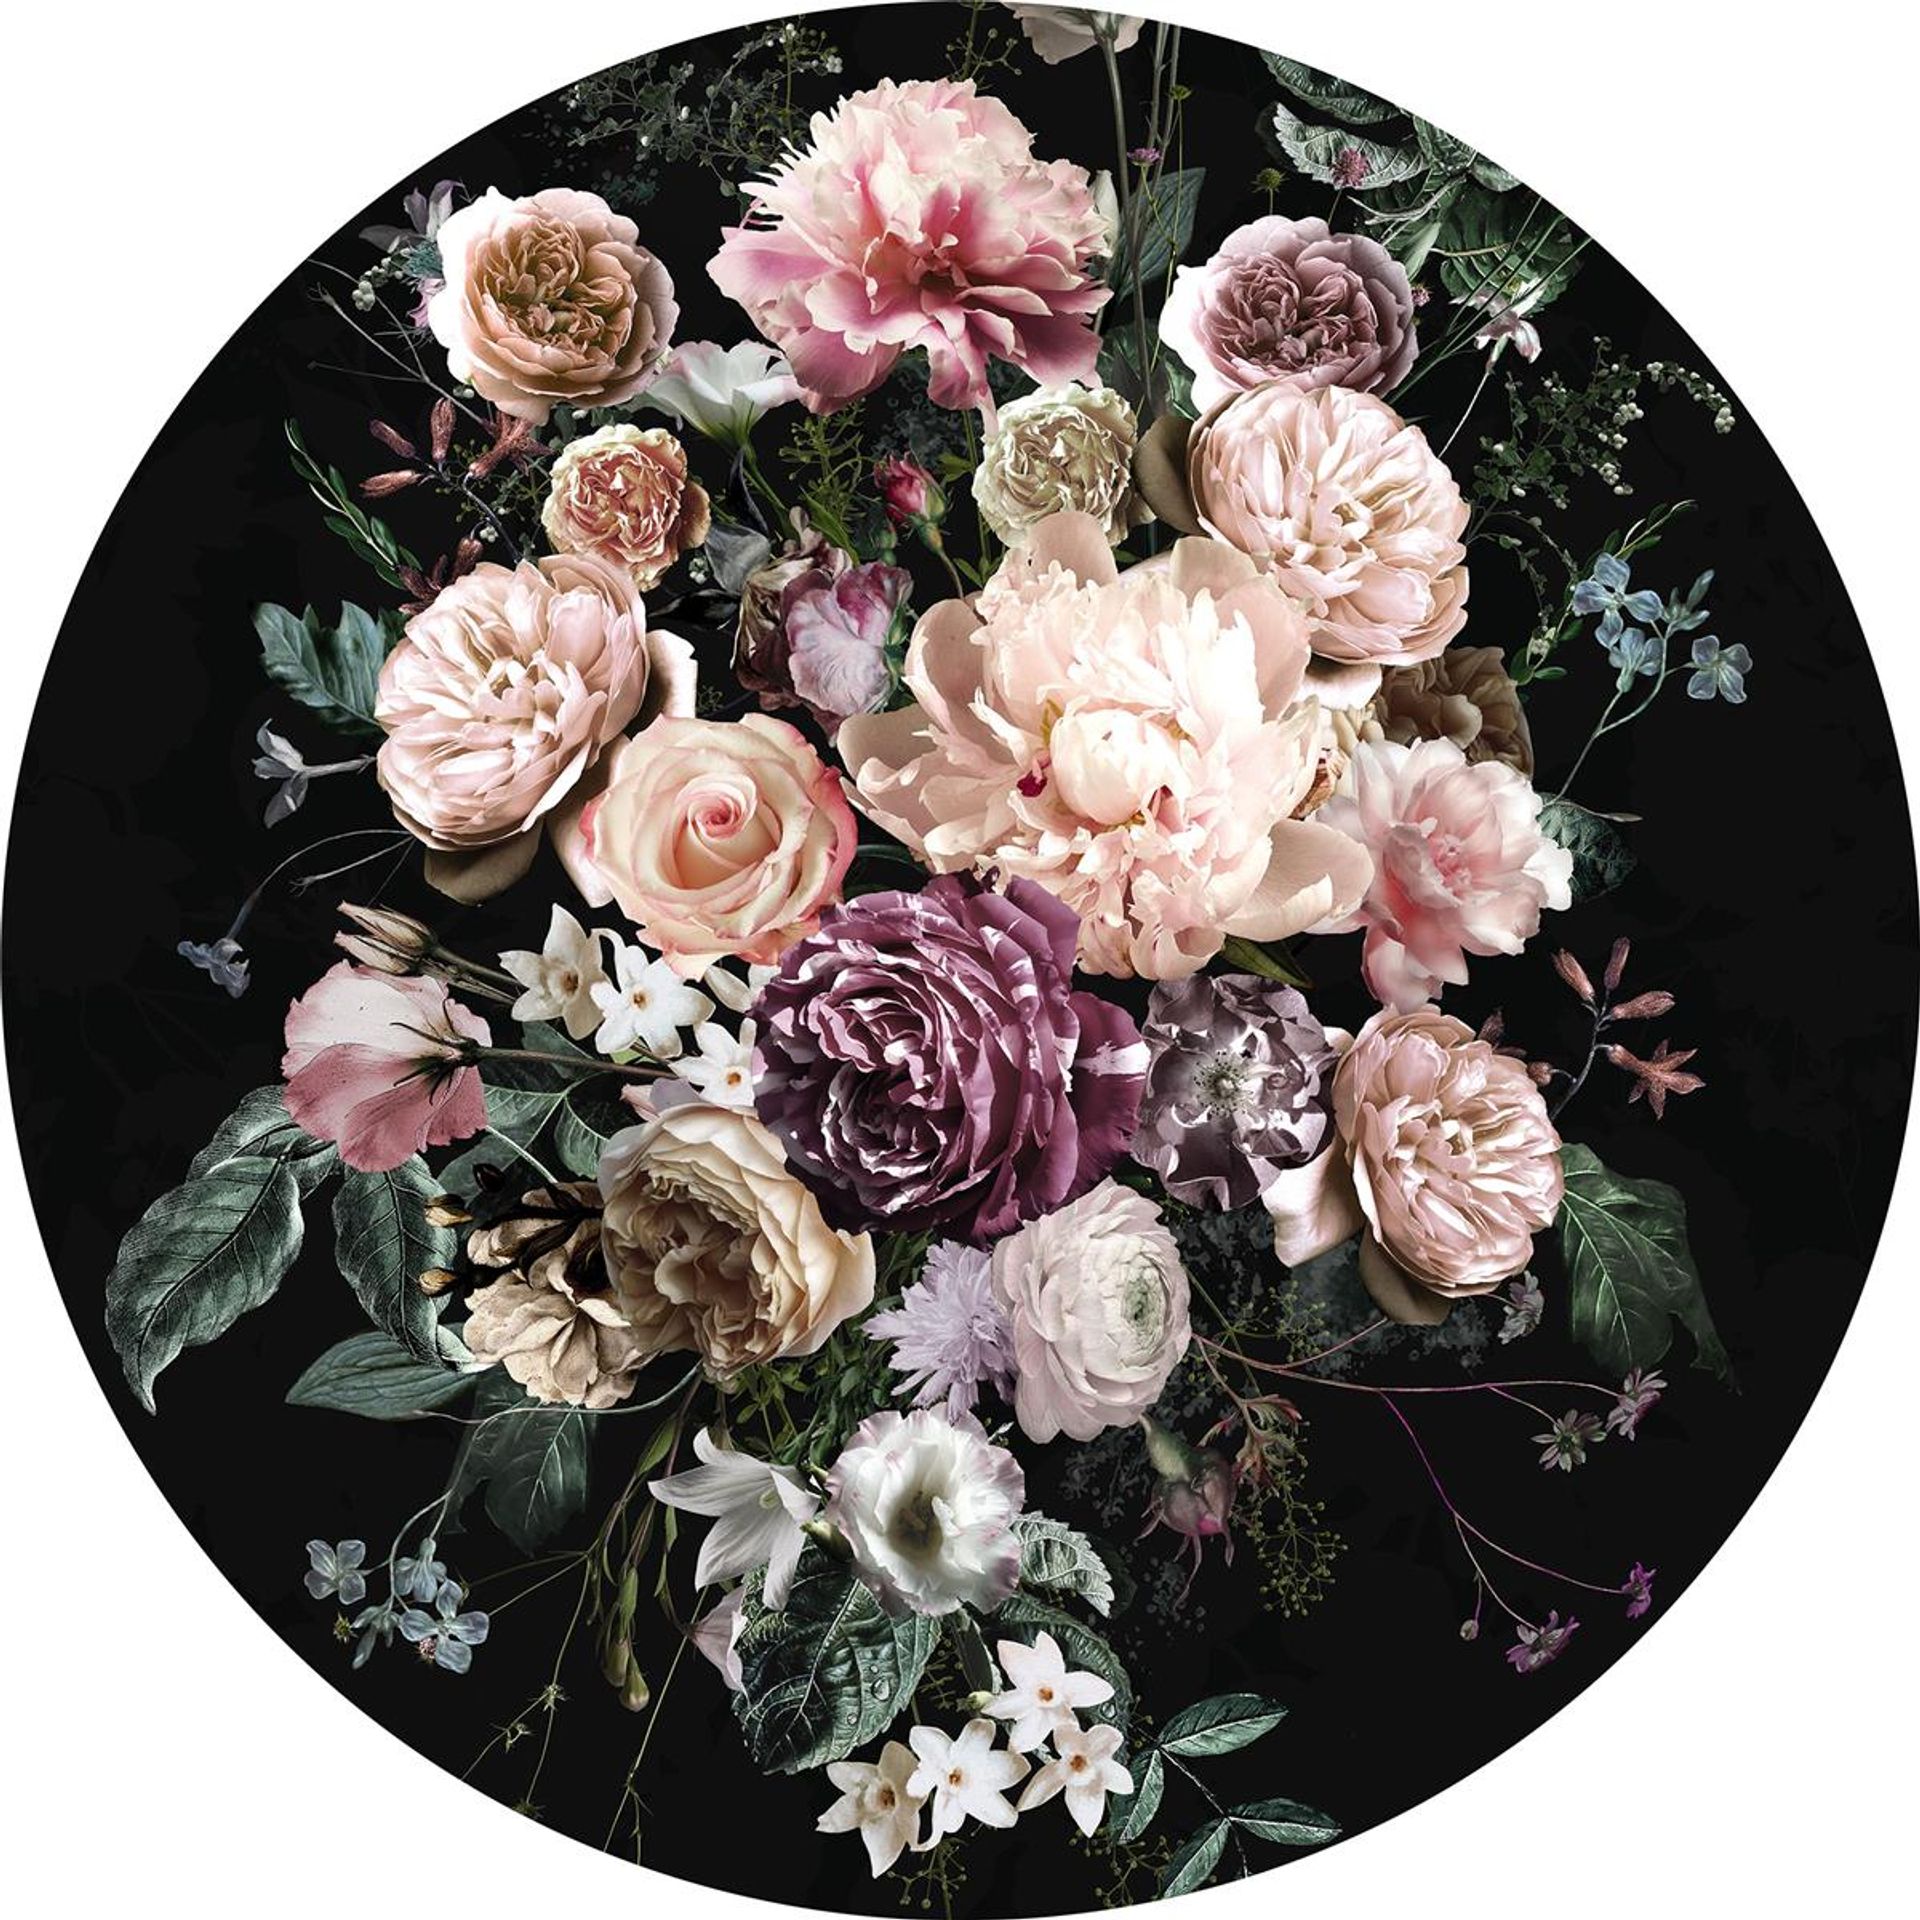 Selbstklebende Vlies Fototapete/Wandtattoo - Enchanted Flowers - Größe 125 x 125 cm